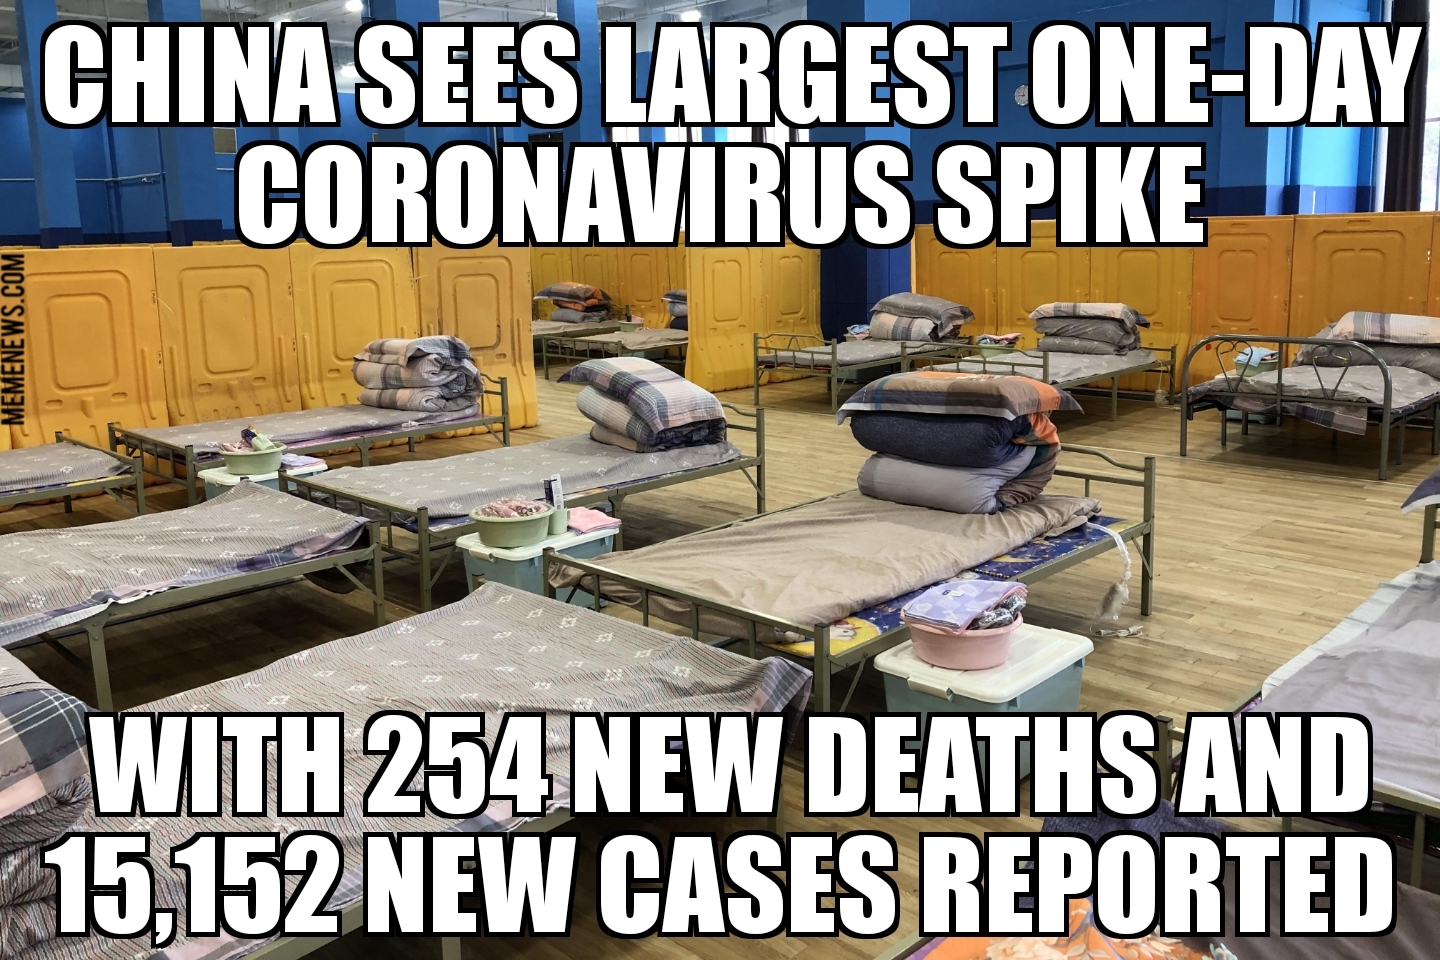 Over 14,000 new coronavirus cases in China